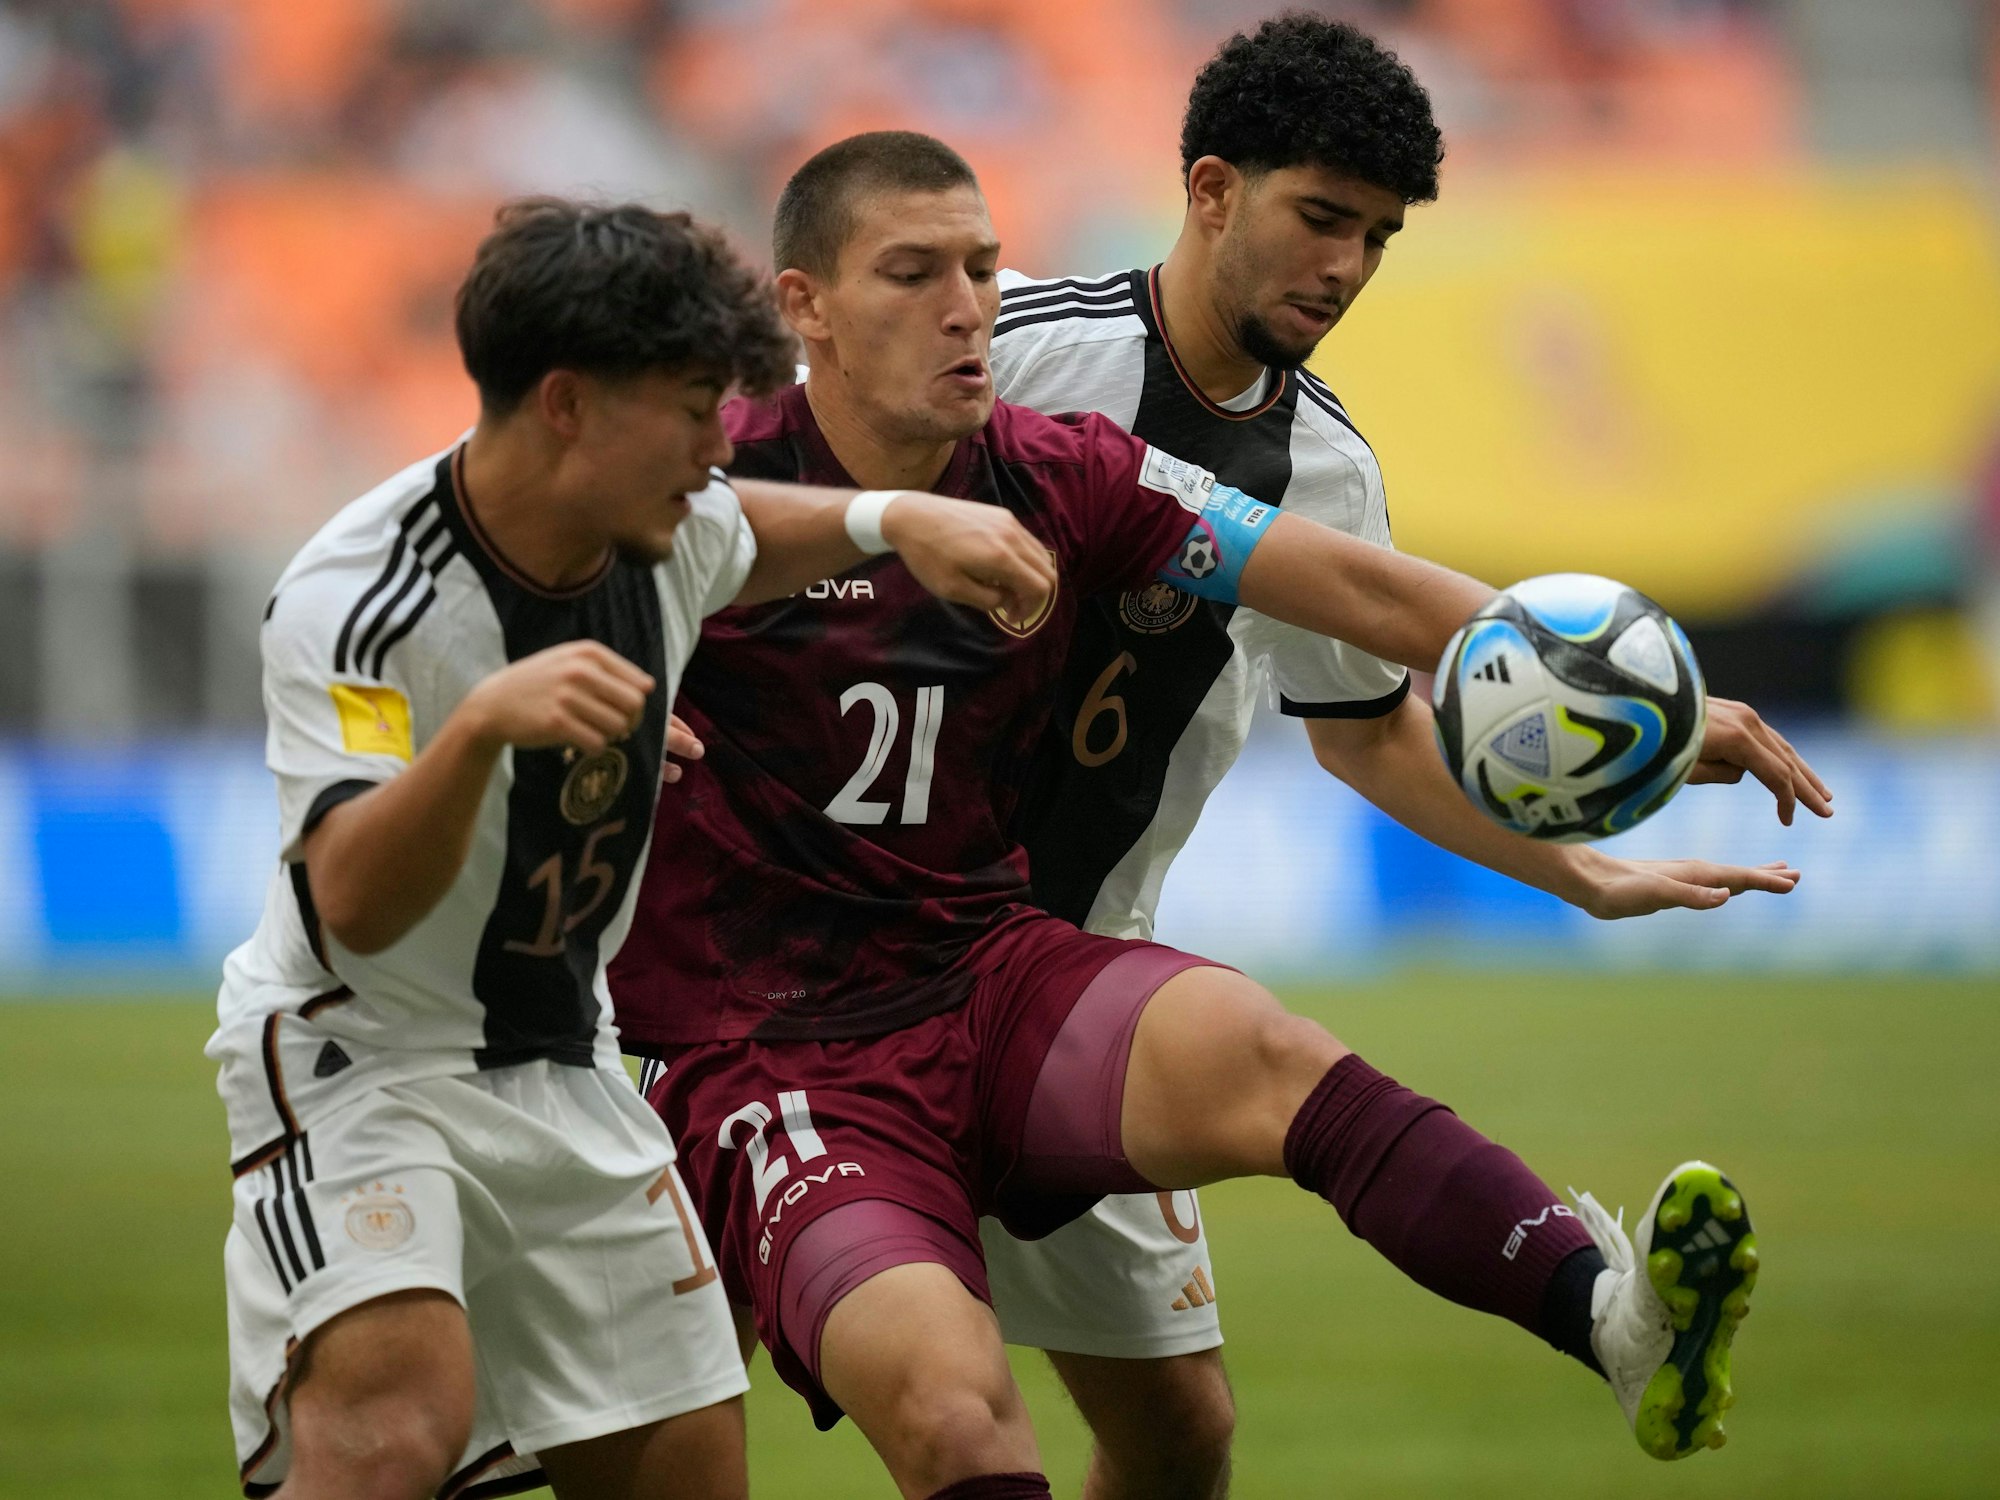 U17-WM: Venezuelas Nicola Profeta kämpft gegen die Deutschen Justin von der Hitz und Fayssal Harchaoui um den Ball.